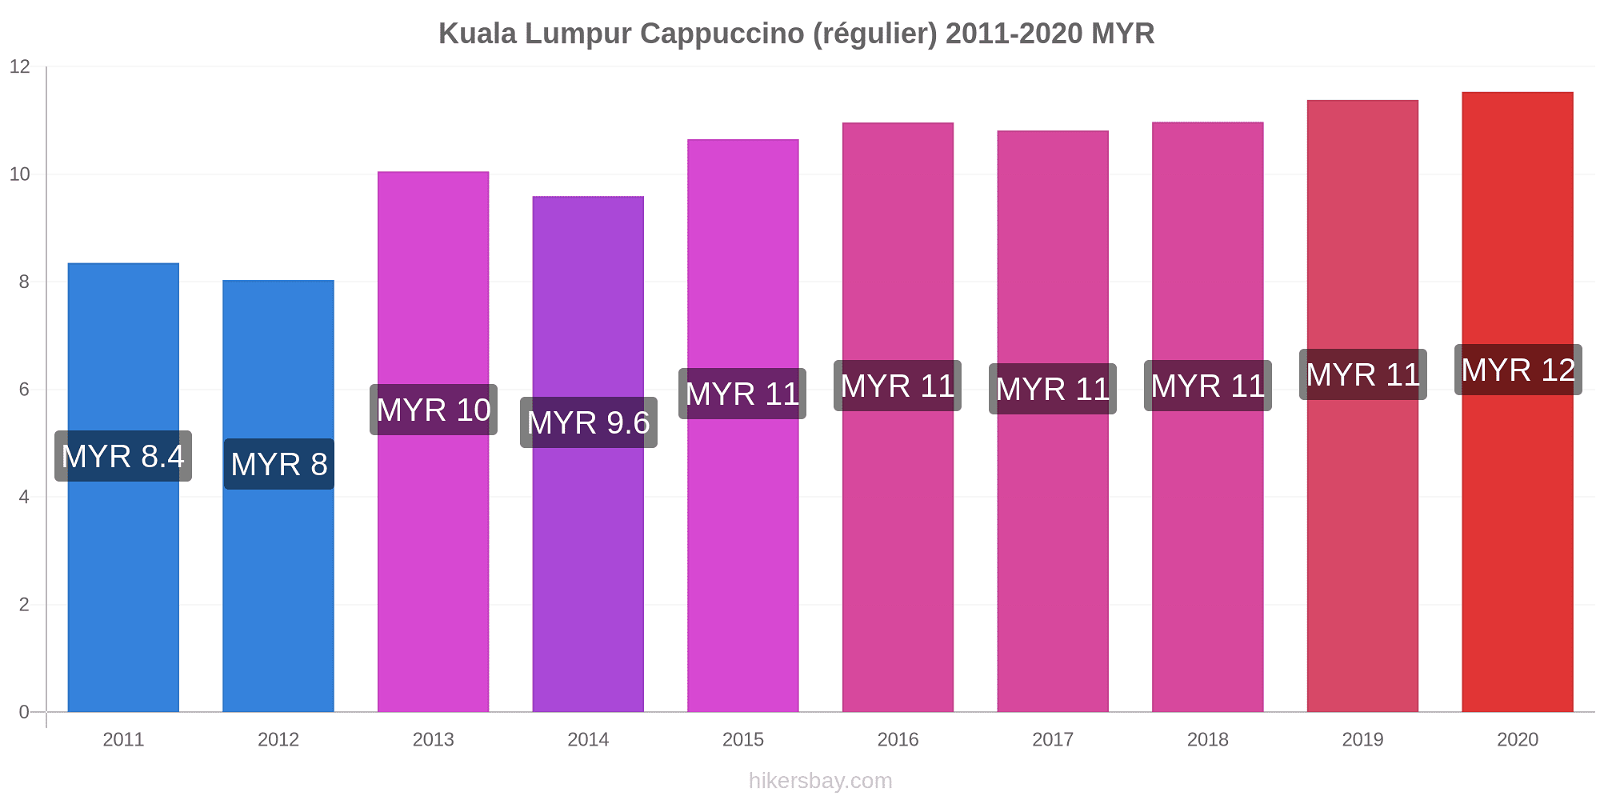 Kuala Lumpur changements de prix Cappuccino (régulier) hikersbay.com